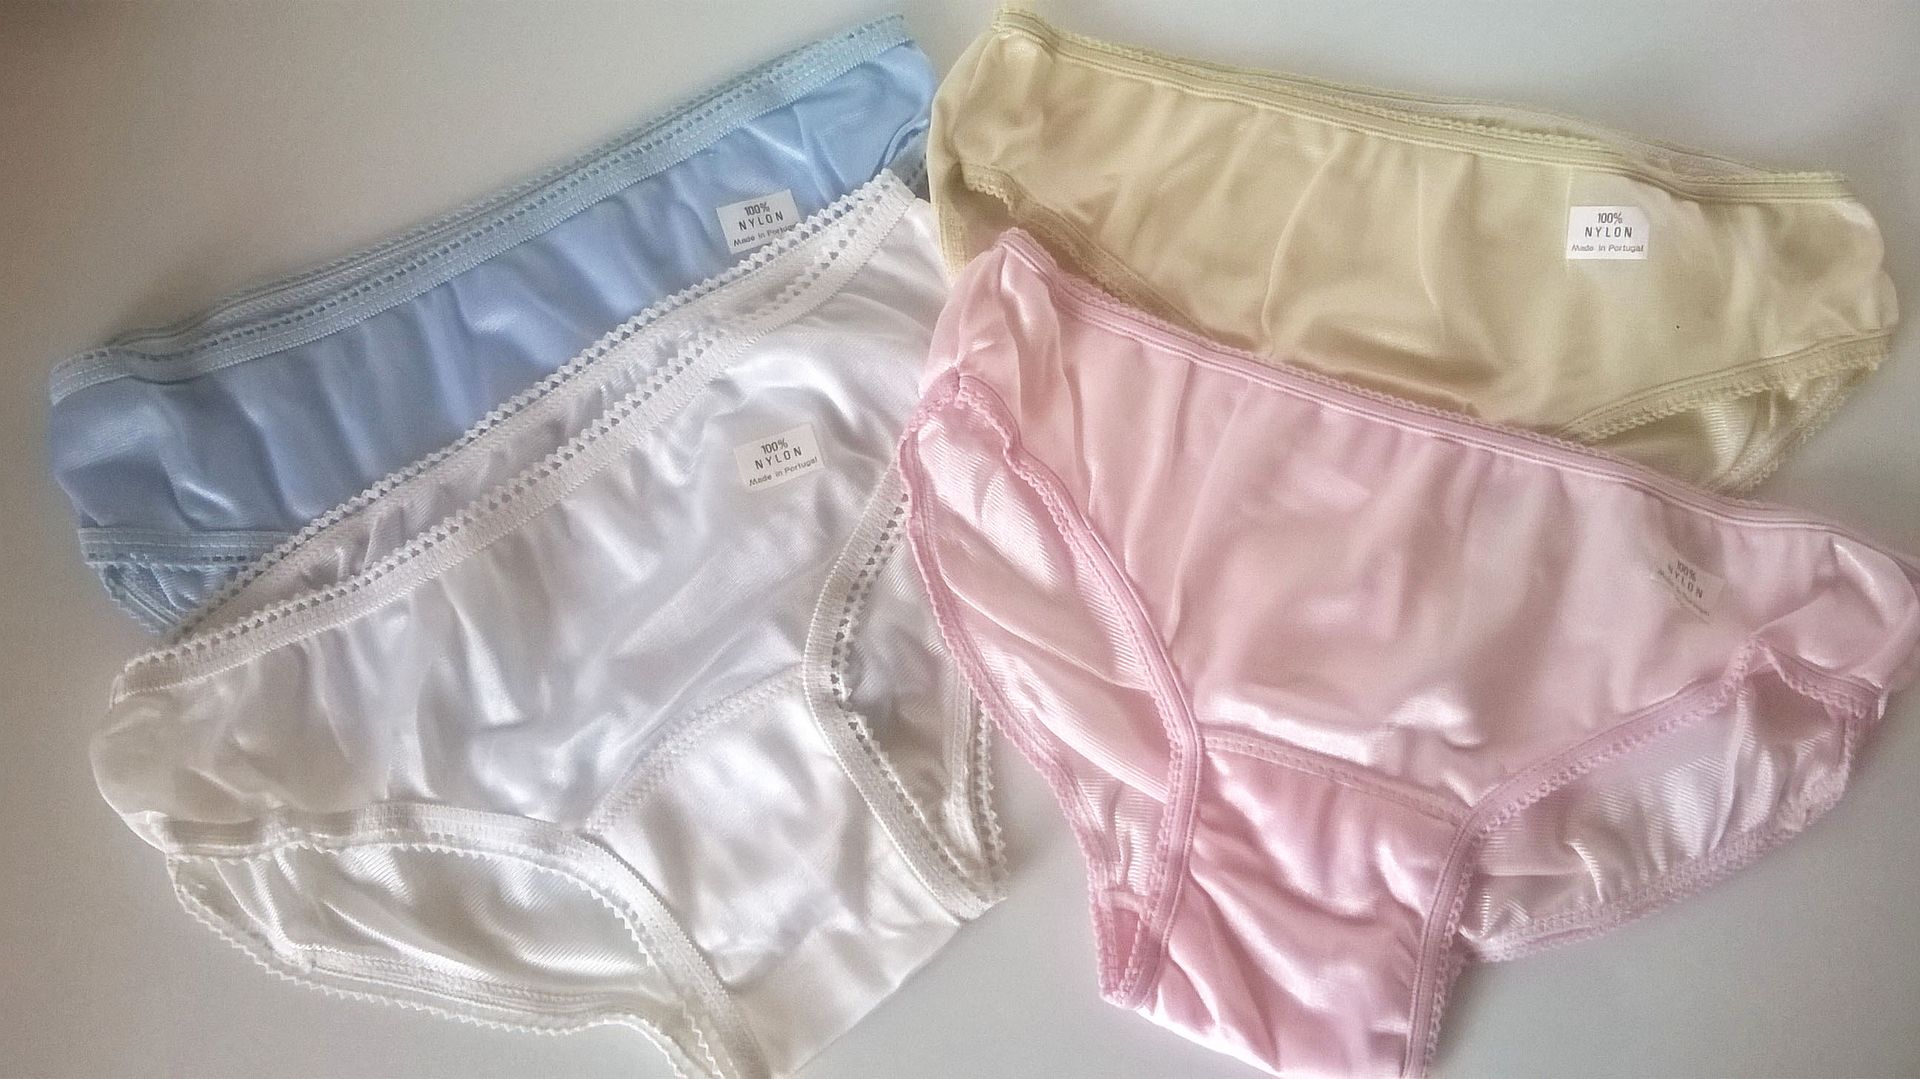 1960s Silky Pastel Nylon Panties Knickers 4 Pack Ladiesteen Girls S 810 Ebay 